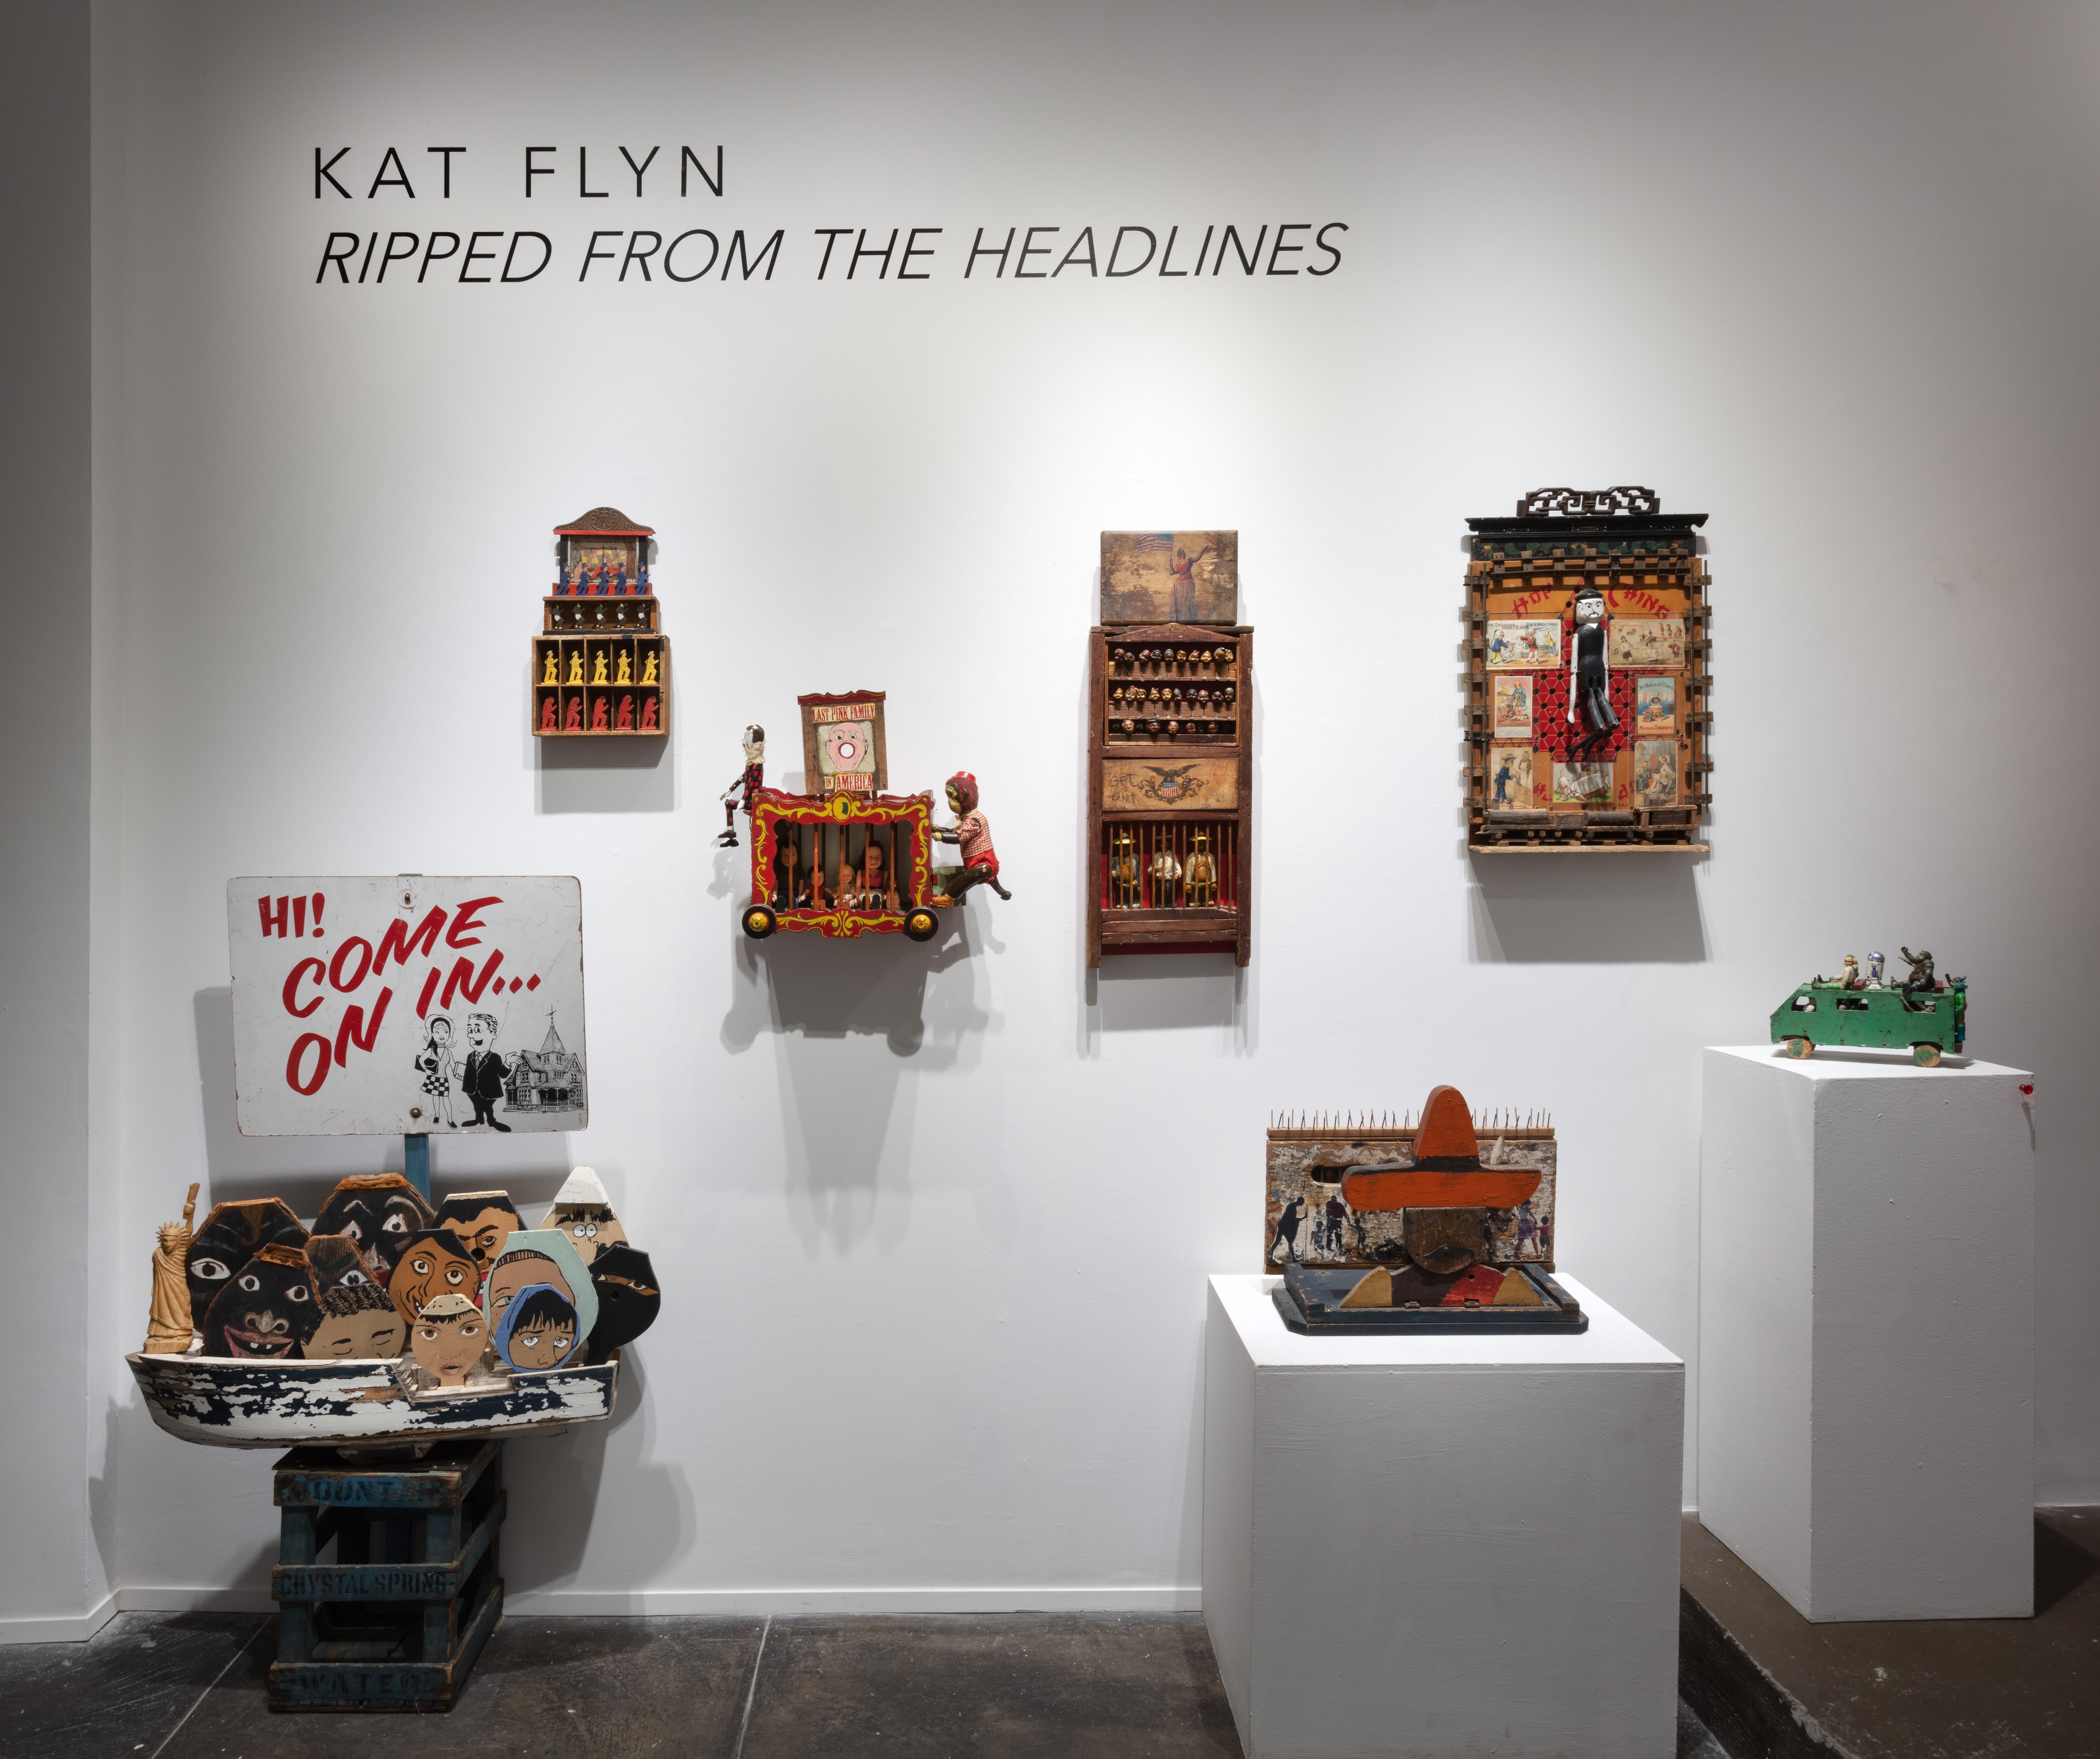 KAT FLYN ist eine autodidaktische Assemblage-Künstlerin, die derzeit in San Diego arbeitet. Sie begann ihre Karriere als Kostümbildnerin in Südkalifornien. Im Laufe der Jahre sammelte sie eine Fülle von Artefakten und Sammlerstücken an, die sie in